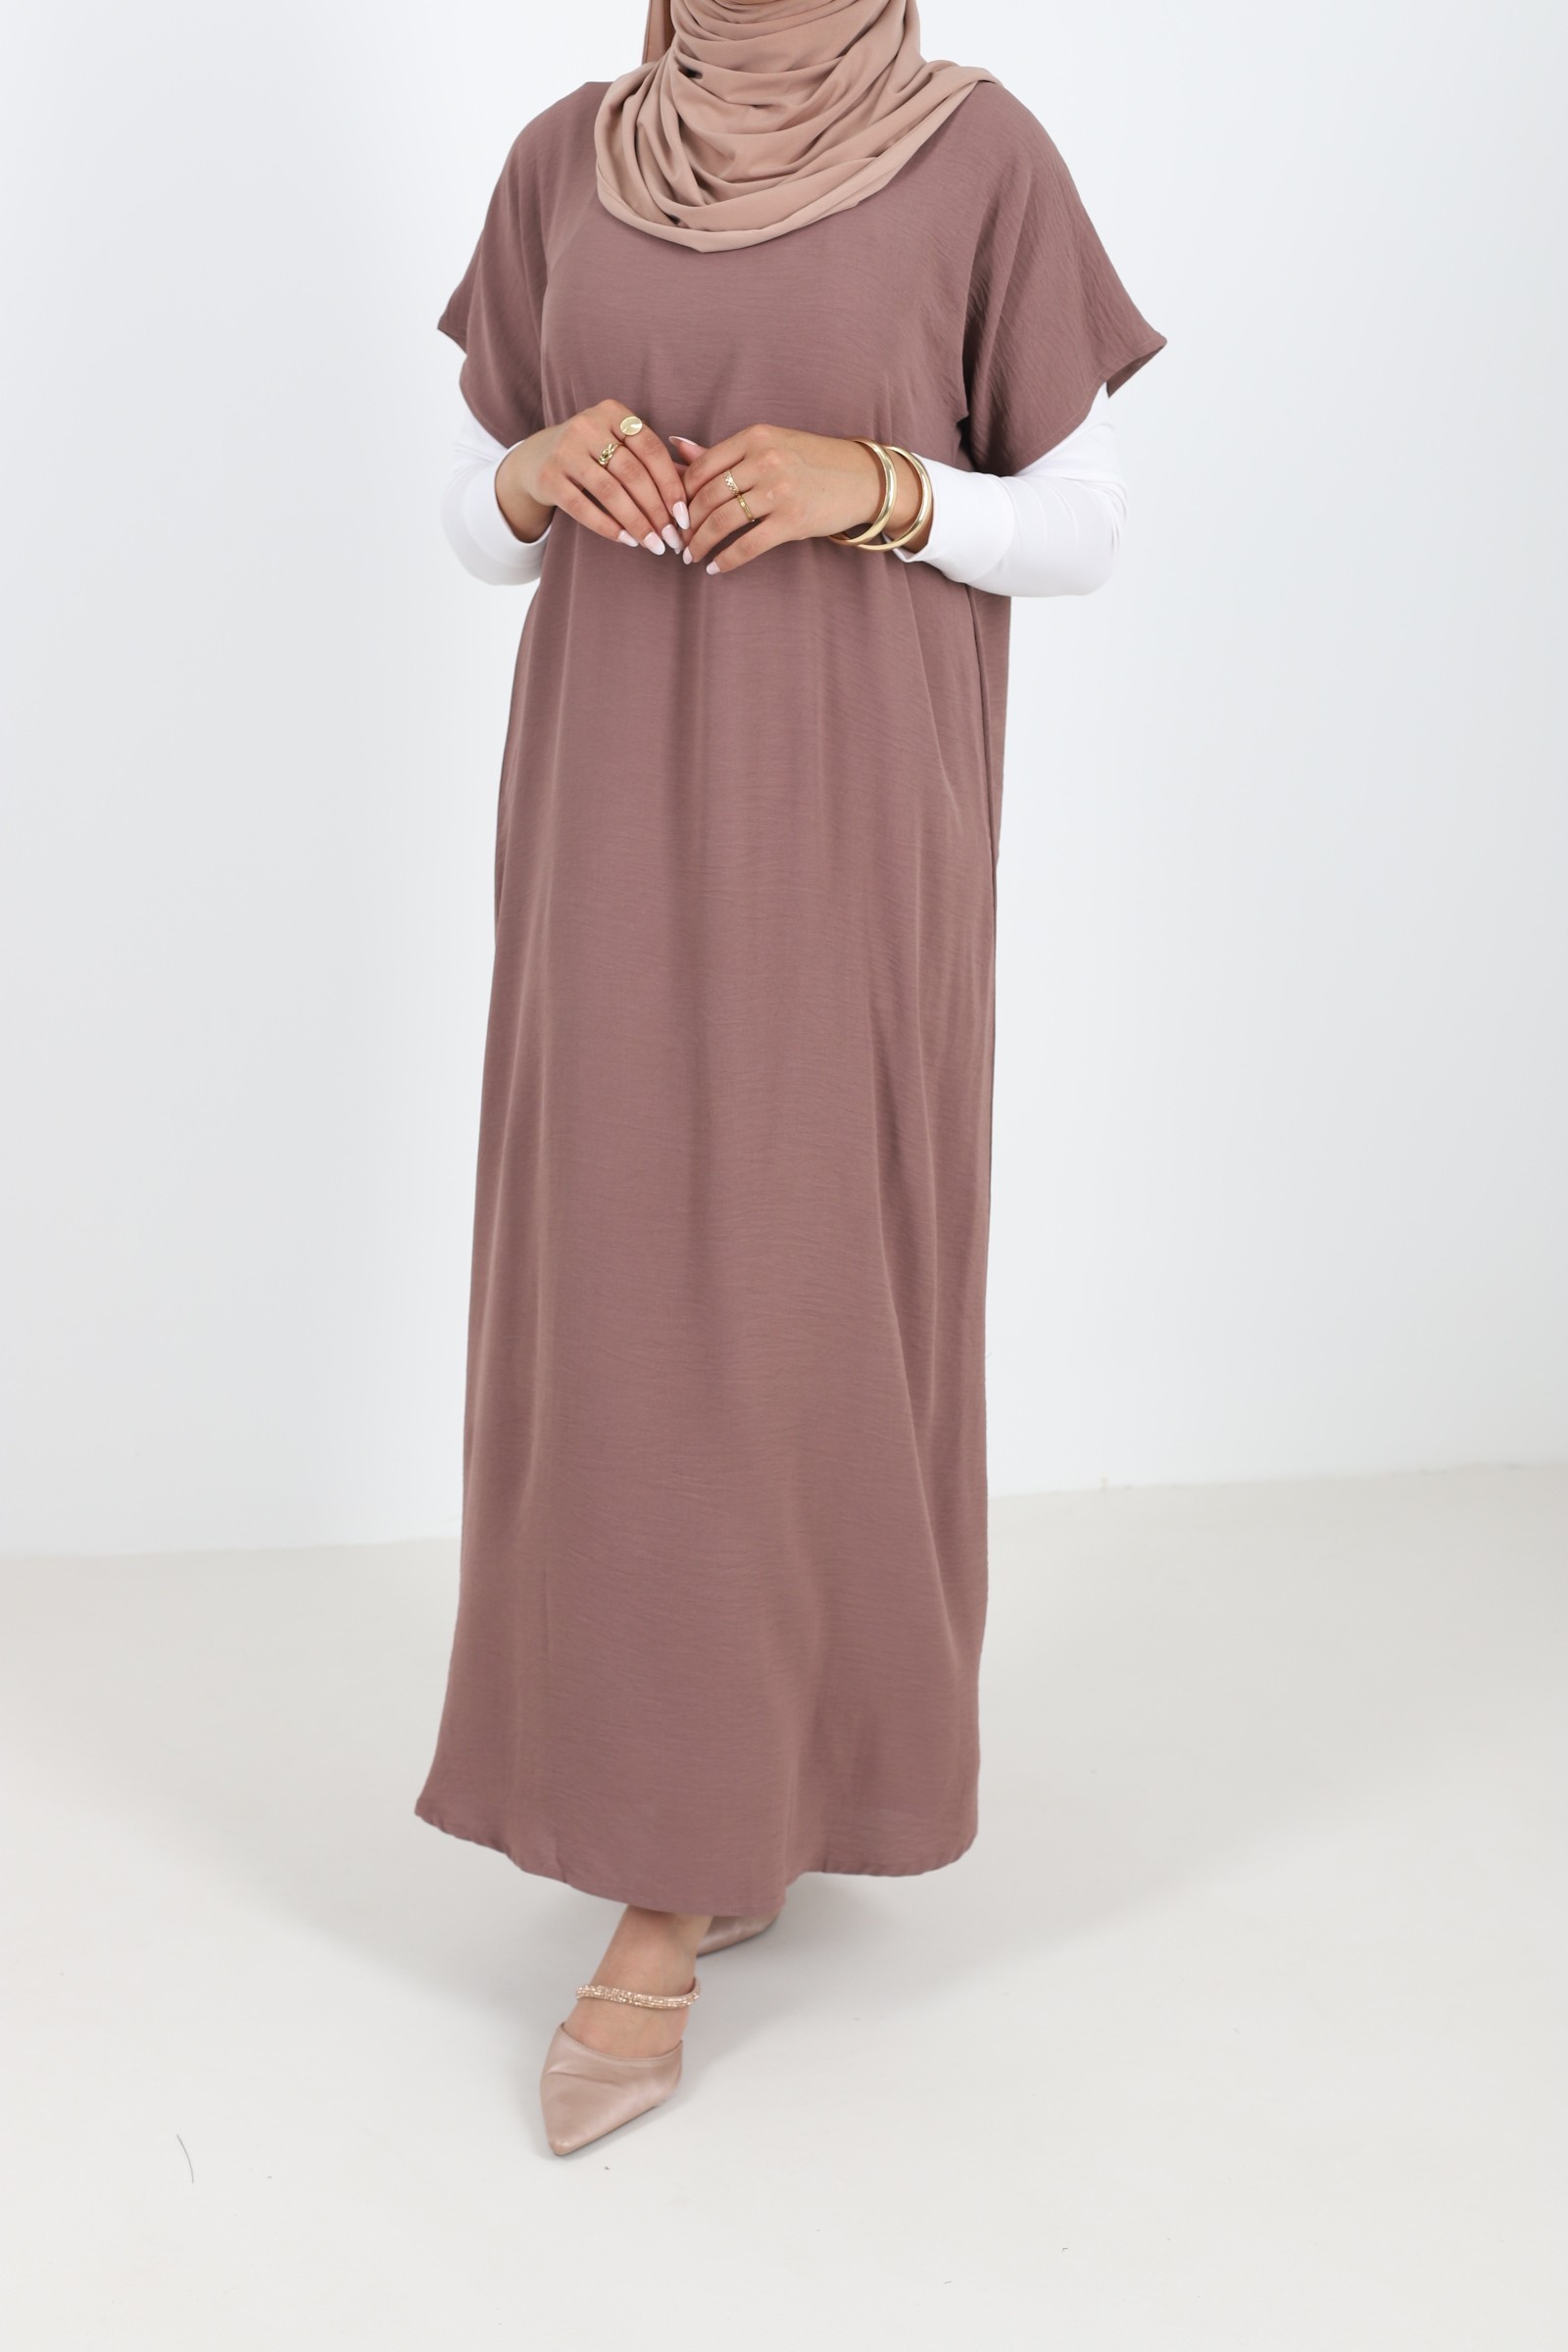 Under abaya brown